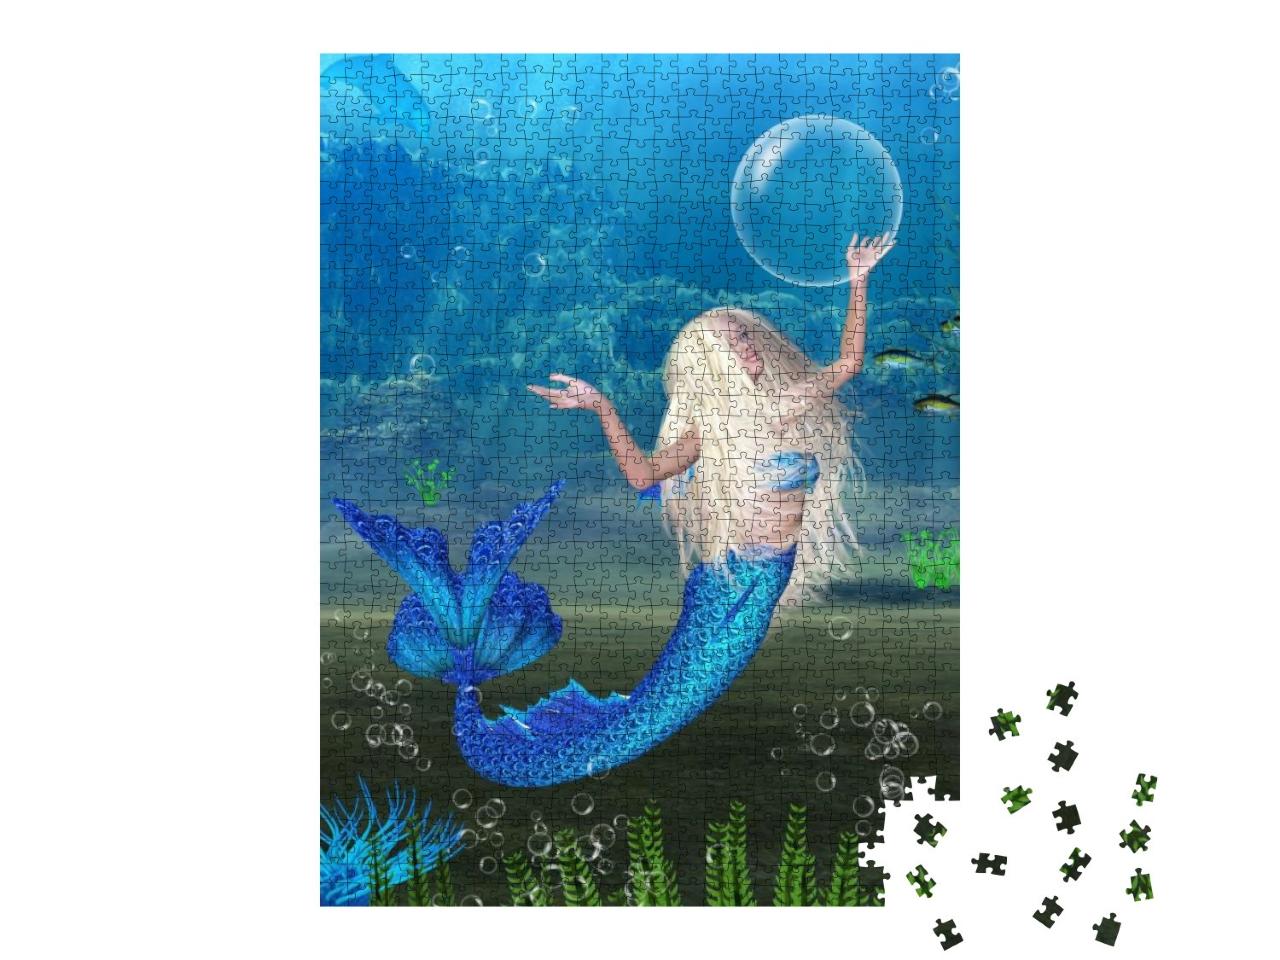 Puzzle 1000 Teile „Blonde Meerjungfrau beim Spiel mit Luftblasen unter Wasser“